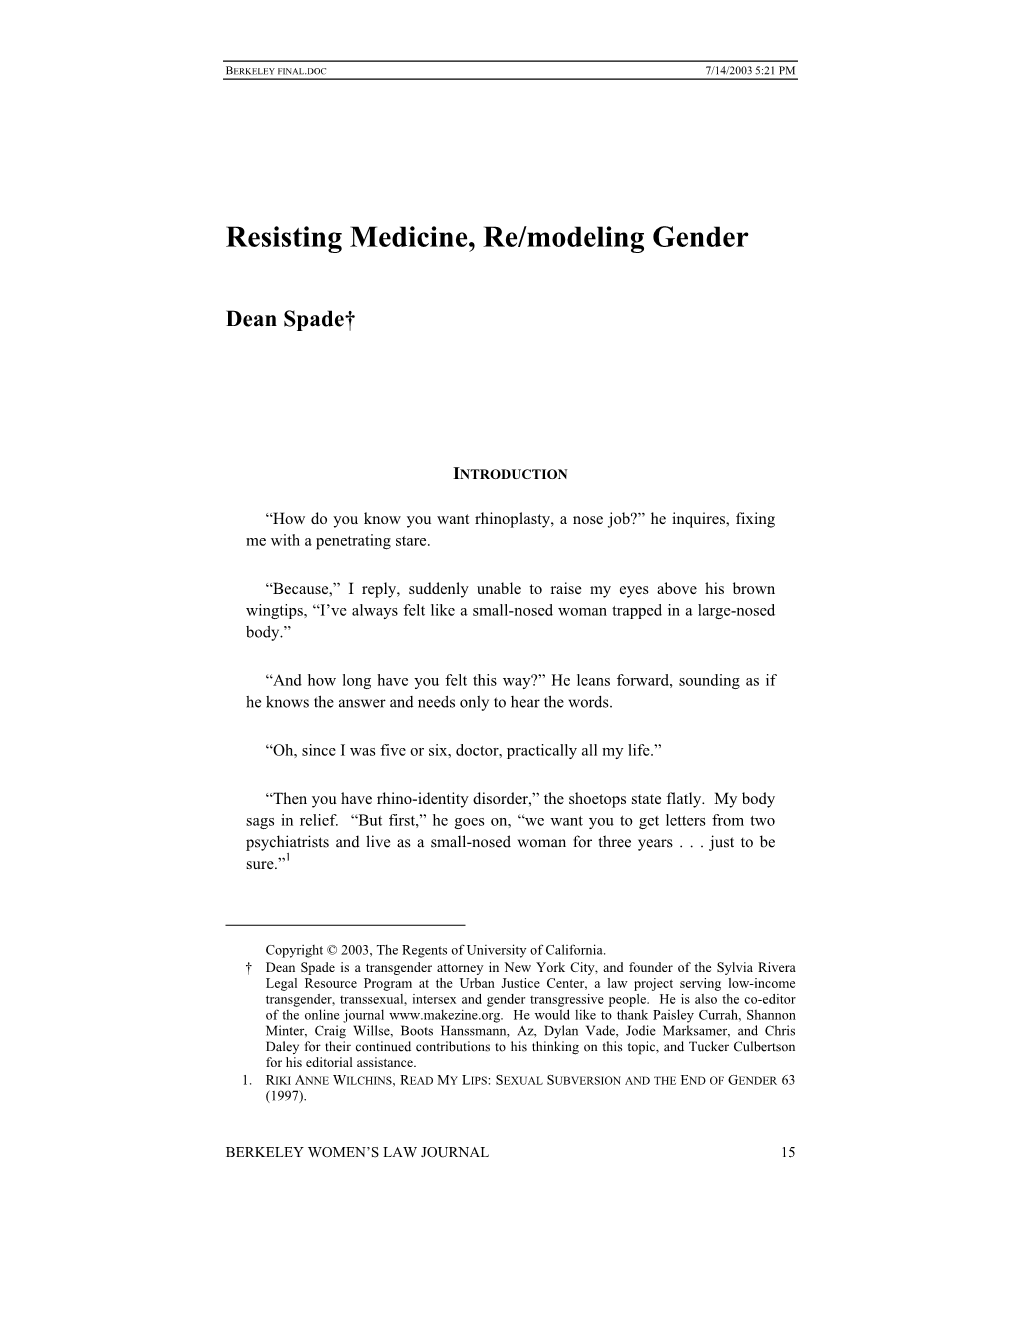 Resisting Medicine, Re/Modeling Gender